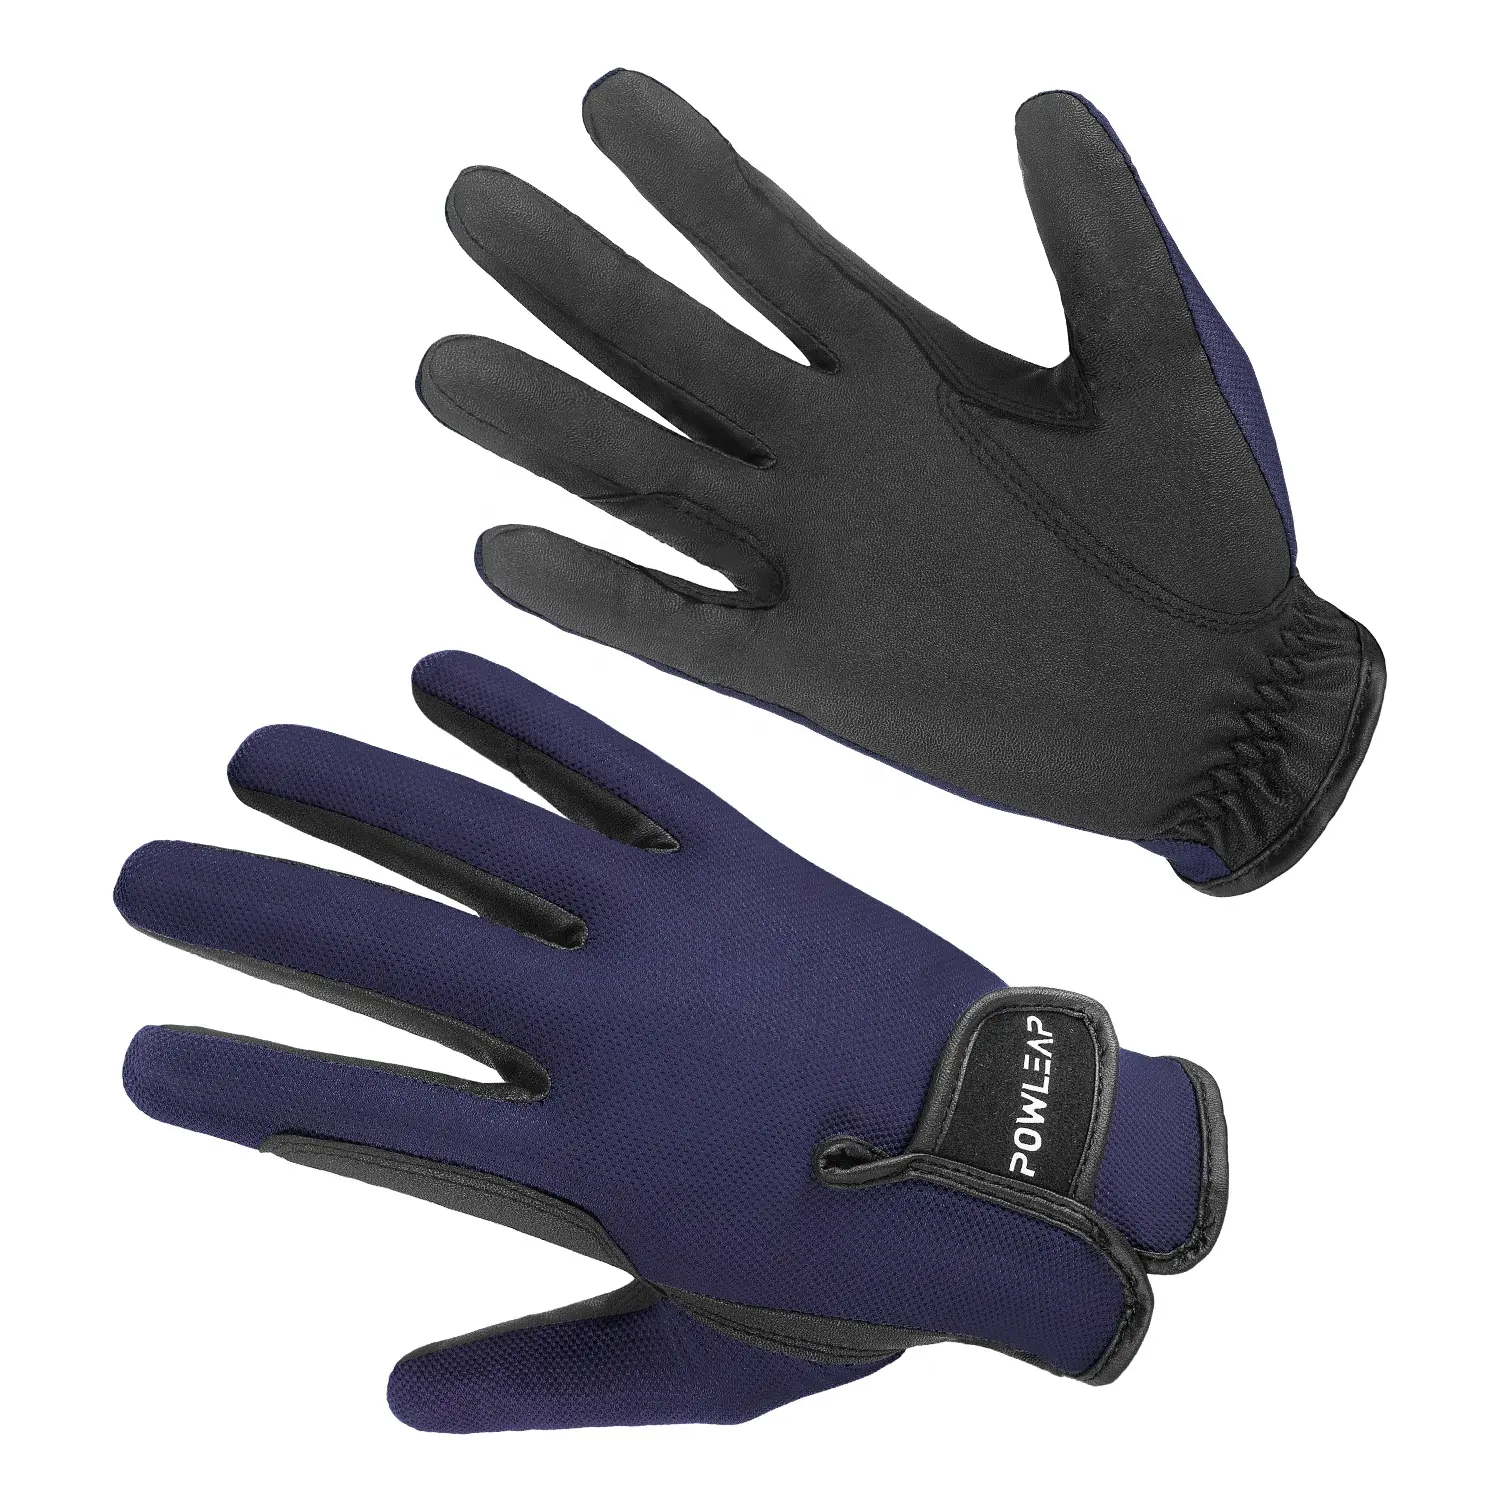 Gants de Sport de plein air fabriqués en chine, gants d'équitation professionnels pour hommes et femmes